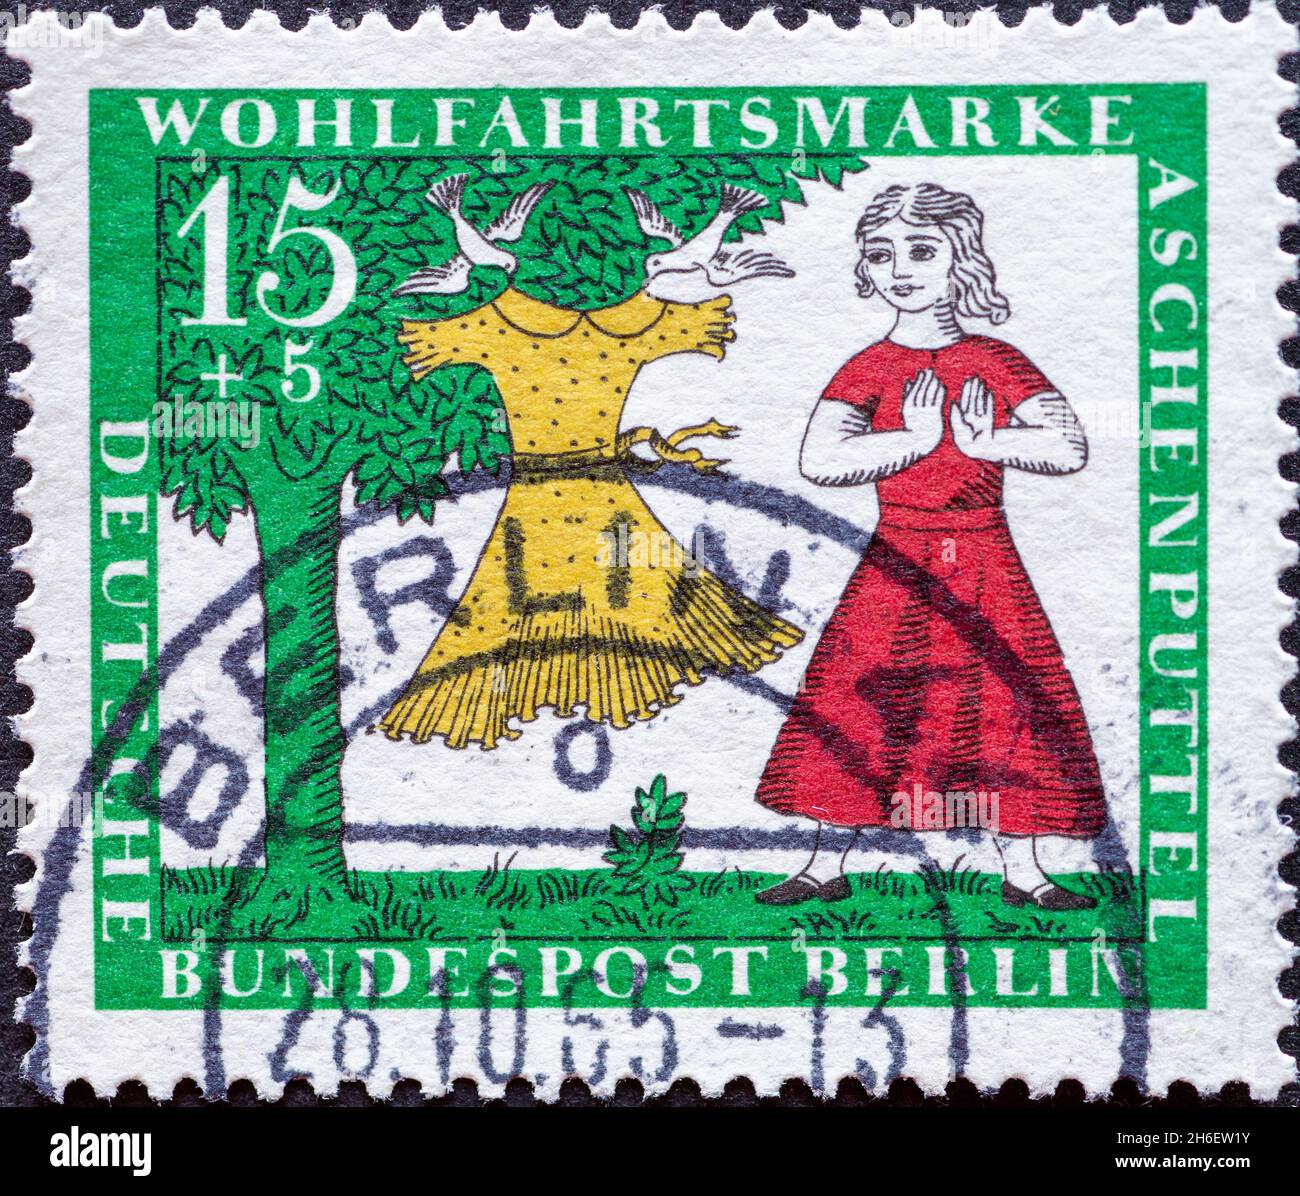 ALLEMAGNE, Berlin - VERS 1965: Timbre-poste d'Allemagne, Berlin montrant une photo du conte de fées des Frères Grimm: Cendrillon.Un nouveau système dres Banque D'Images